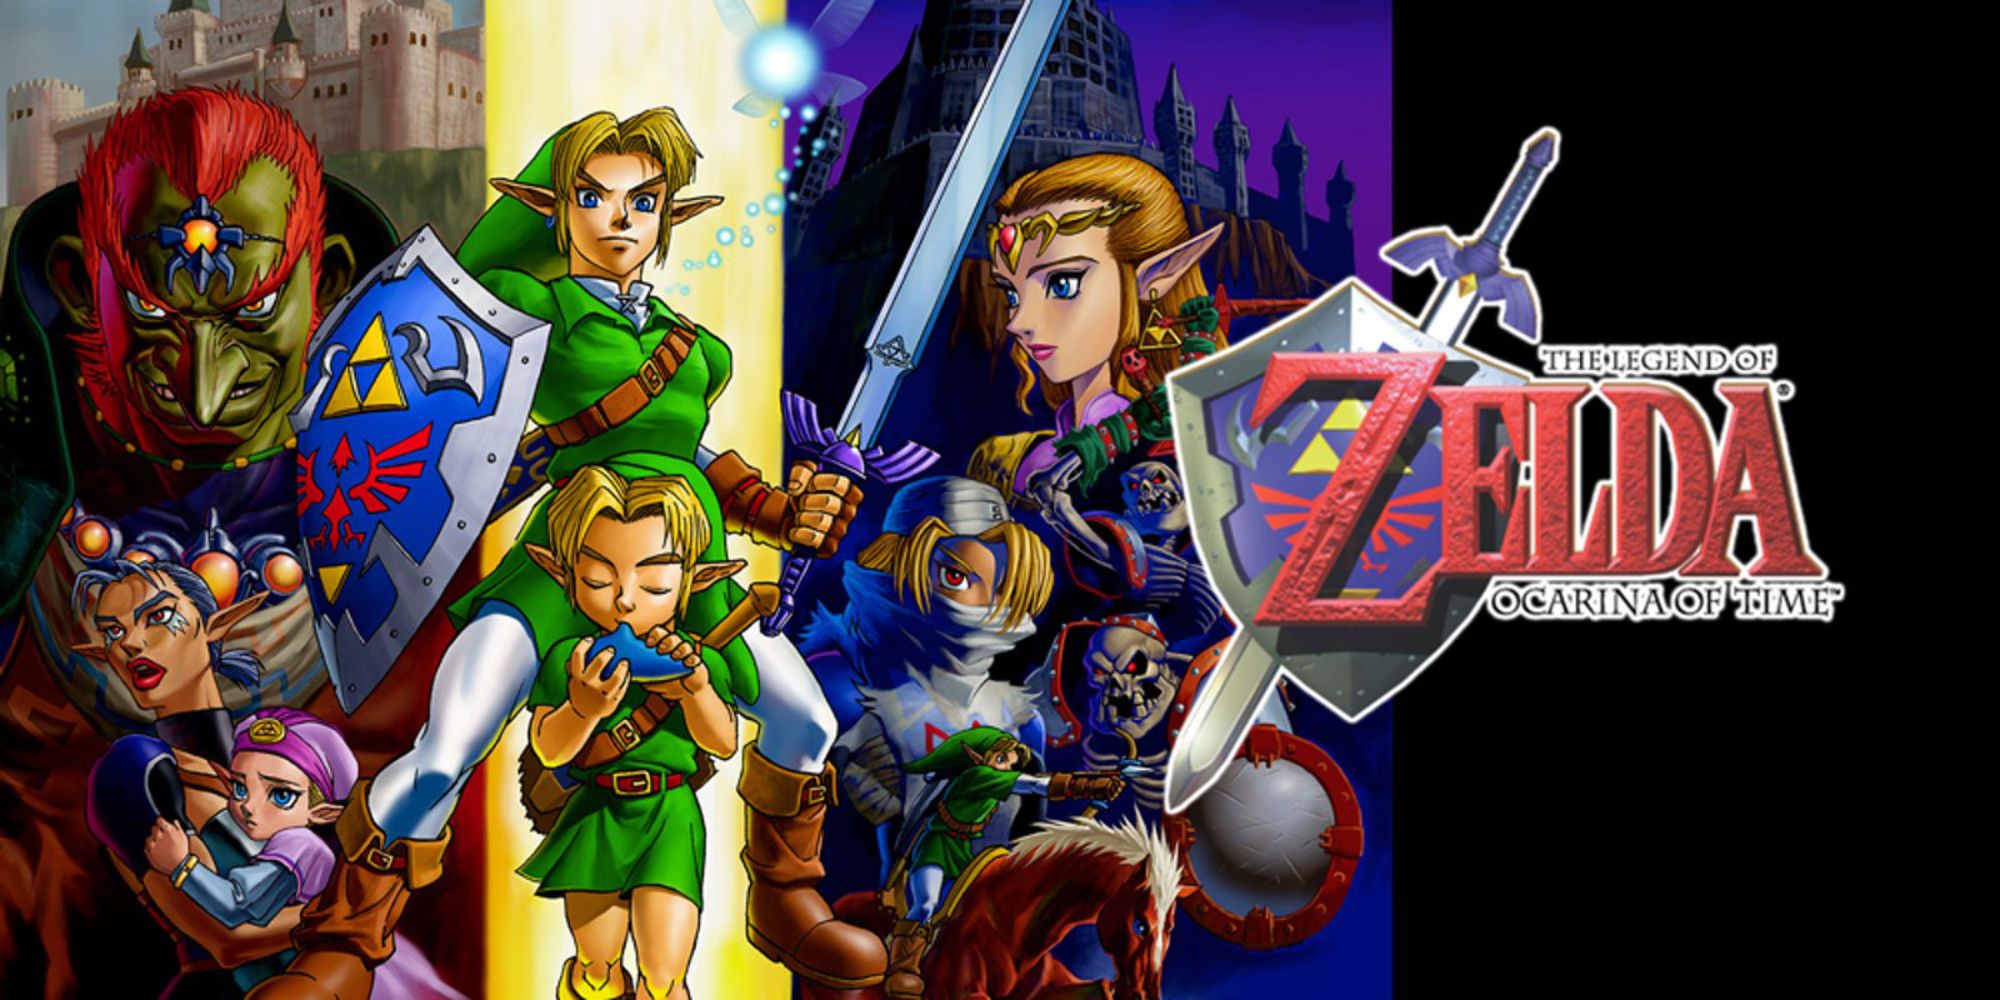 Zorg - NUEVO!!, The Legend of Zelda: Ocarina of Time (TP